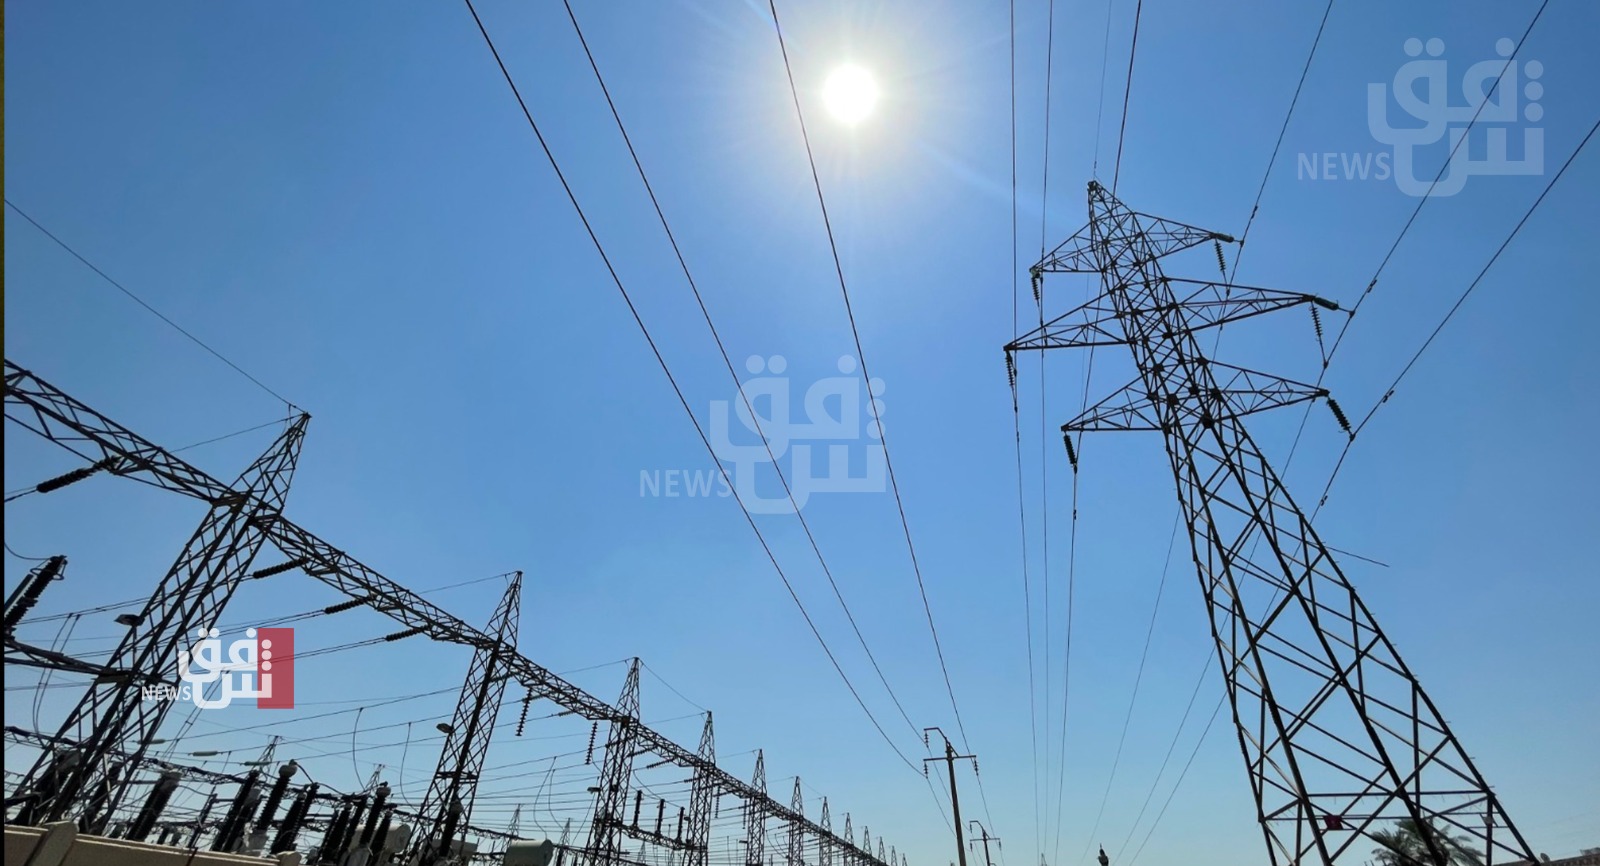 بعد خلل فني دام نحو يوم.. الكهرباء الكوردستانية تعلن إعادة التيار لجميع مناطق الإقليم